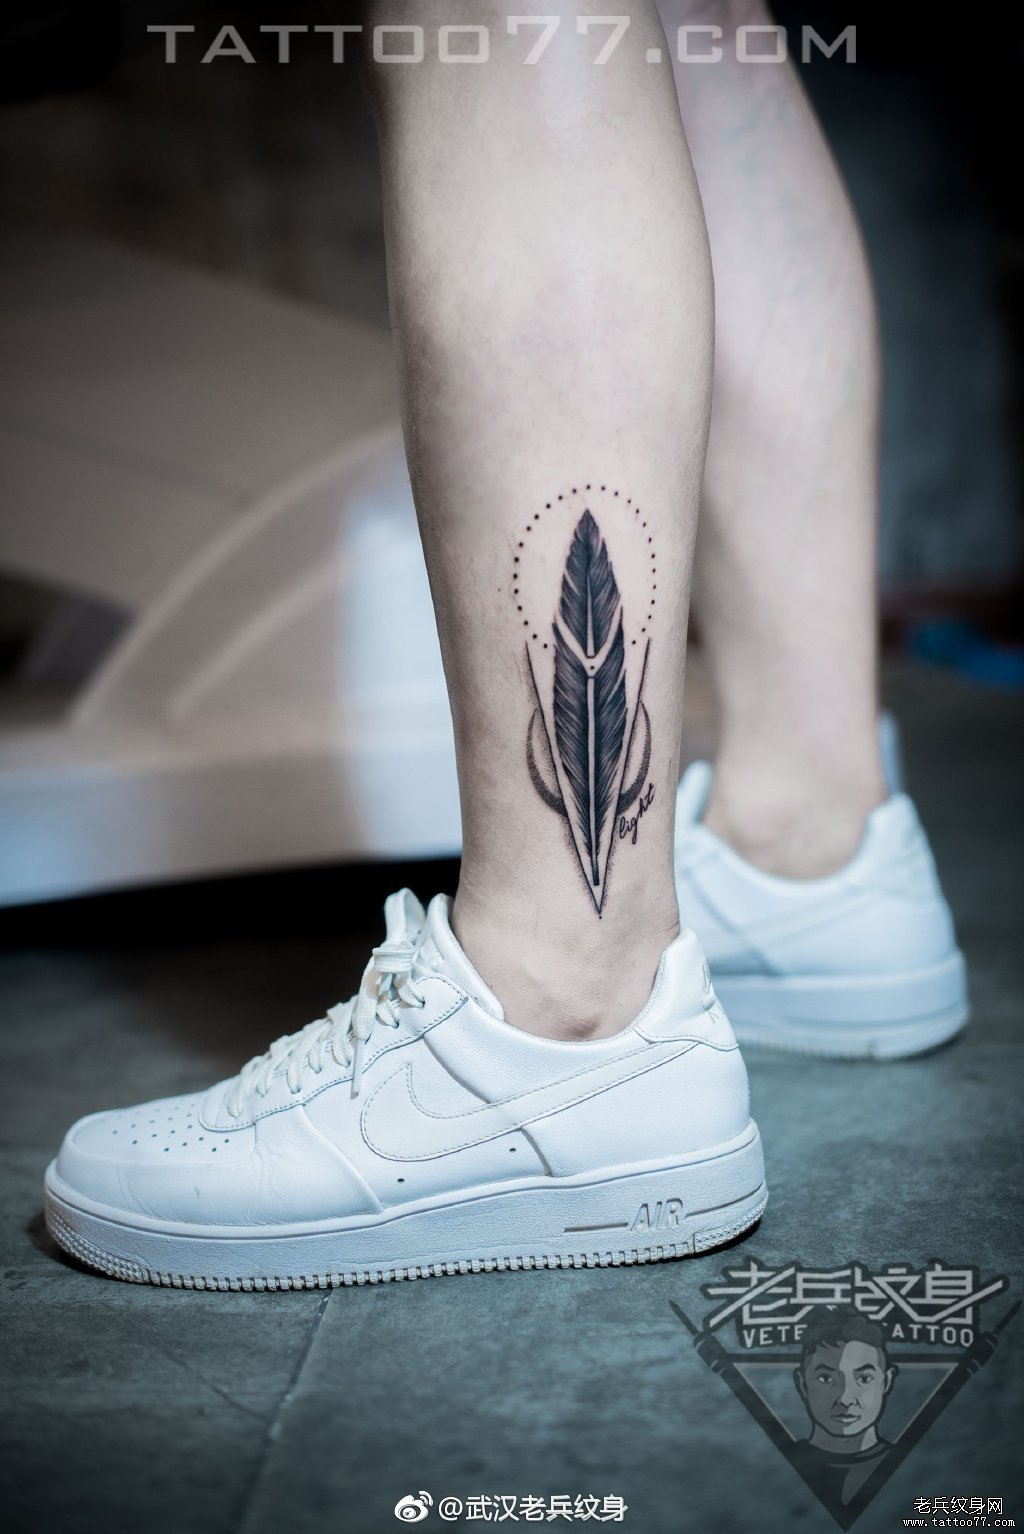 脚踝羽毛纹身图案作品武汉纹身店打造